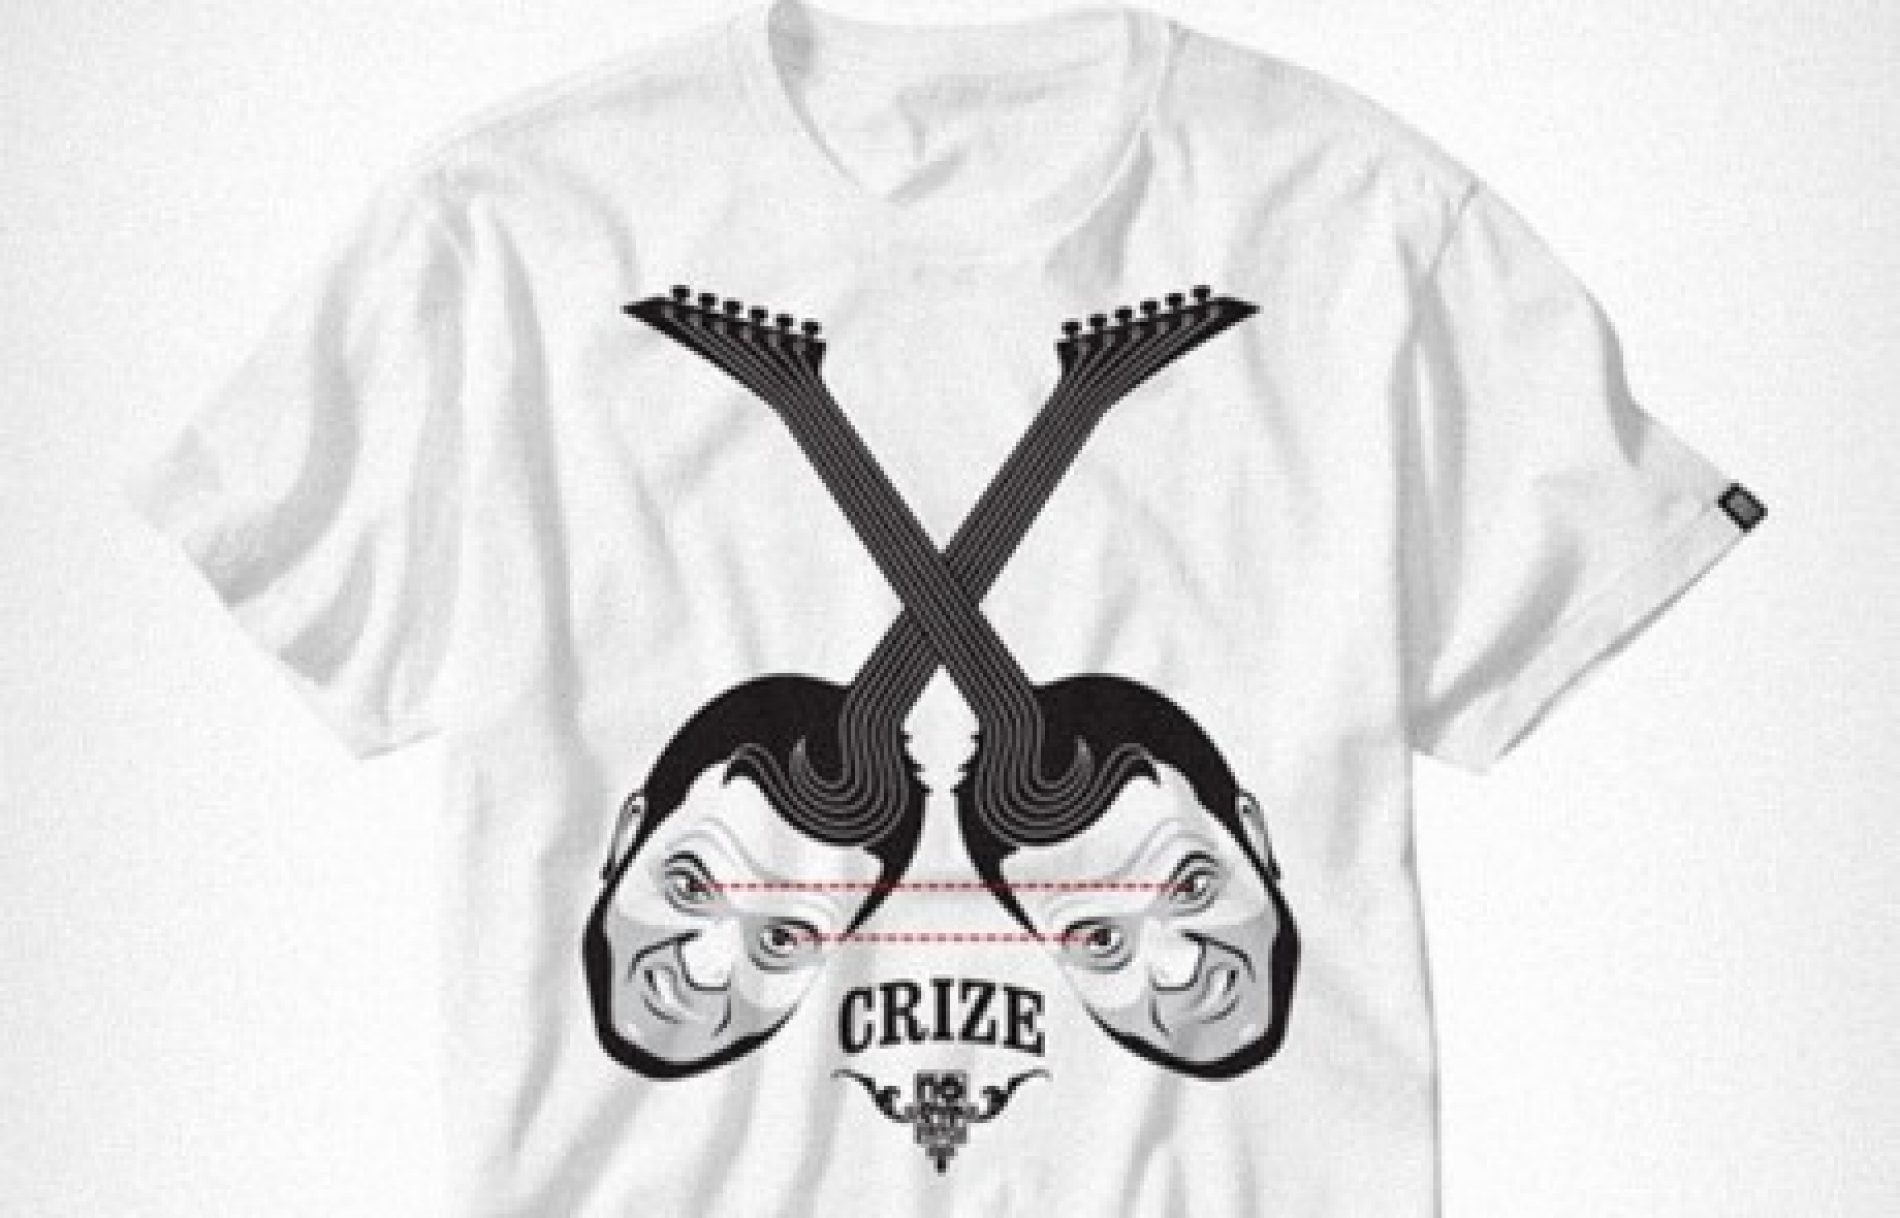 Trupa Crize și NoEyePatch Wear lansează noul tricou official Crize!